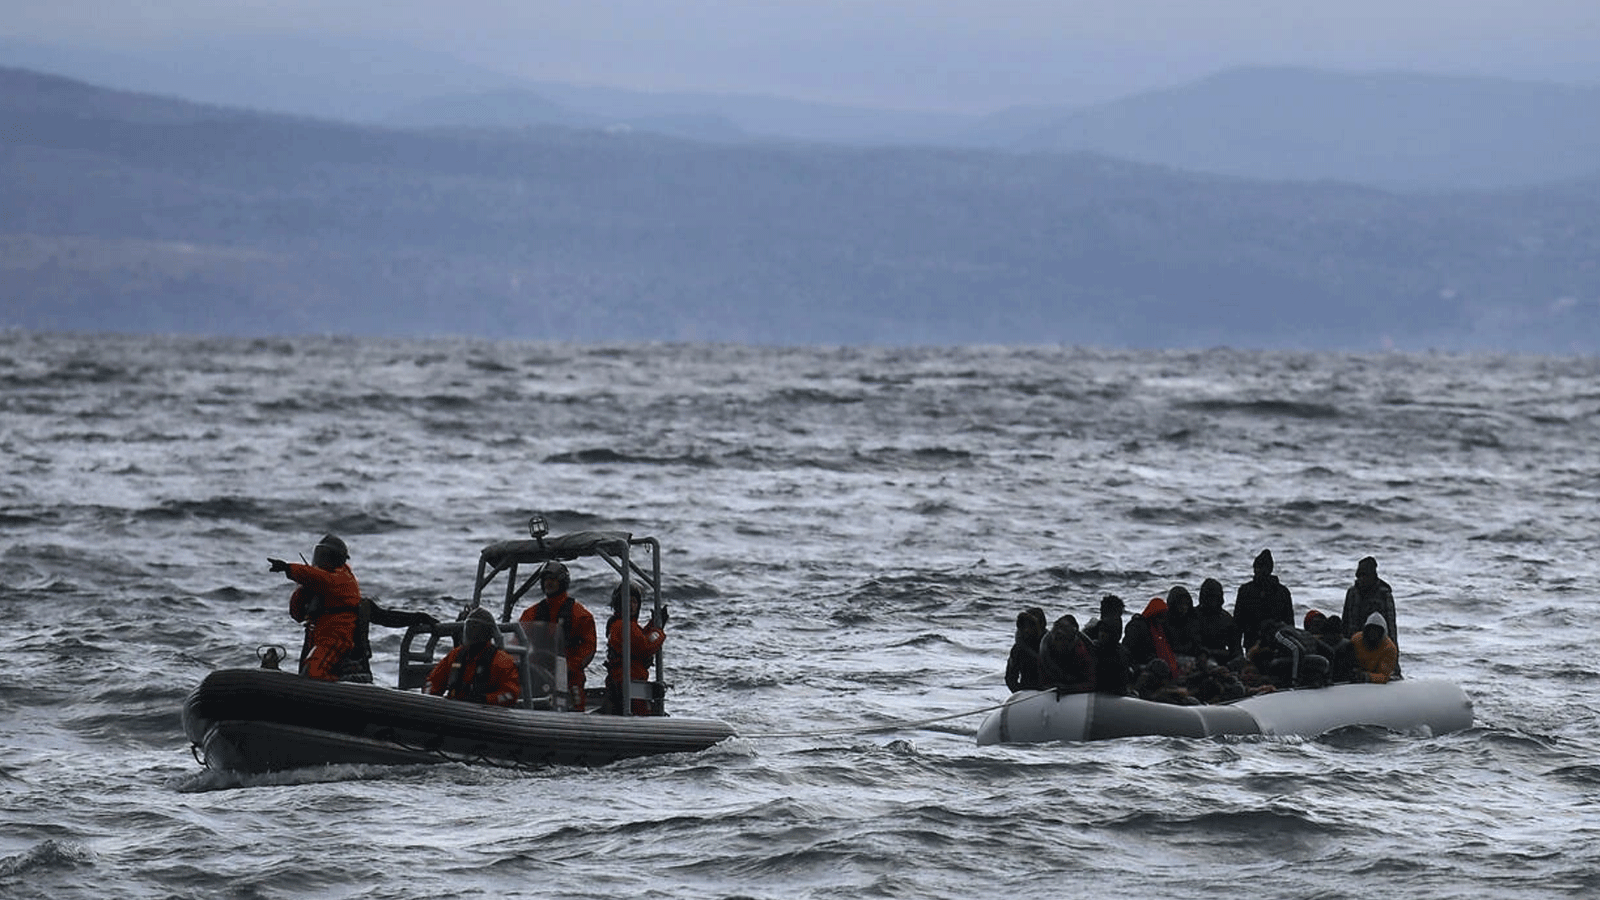 صورة أرشيفية لزورق ينقل عشرات اللاجئين والمهاجرين، يتم سحبه باتجاه جزيرة ليسبوس اليونانية، بعدما أنقذته سفينة حربية أثناء عبورهم البحر بين تركيا واليونان في 29 شباط\ فبراير 2020